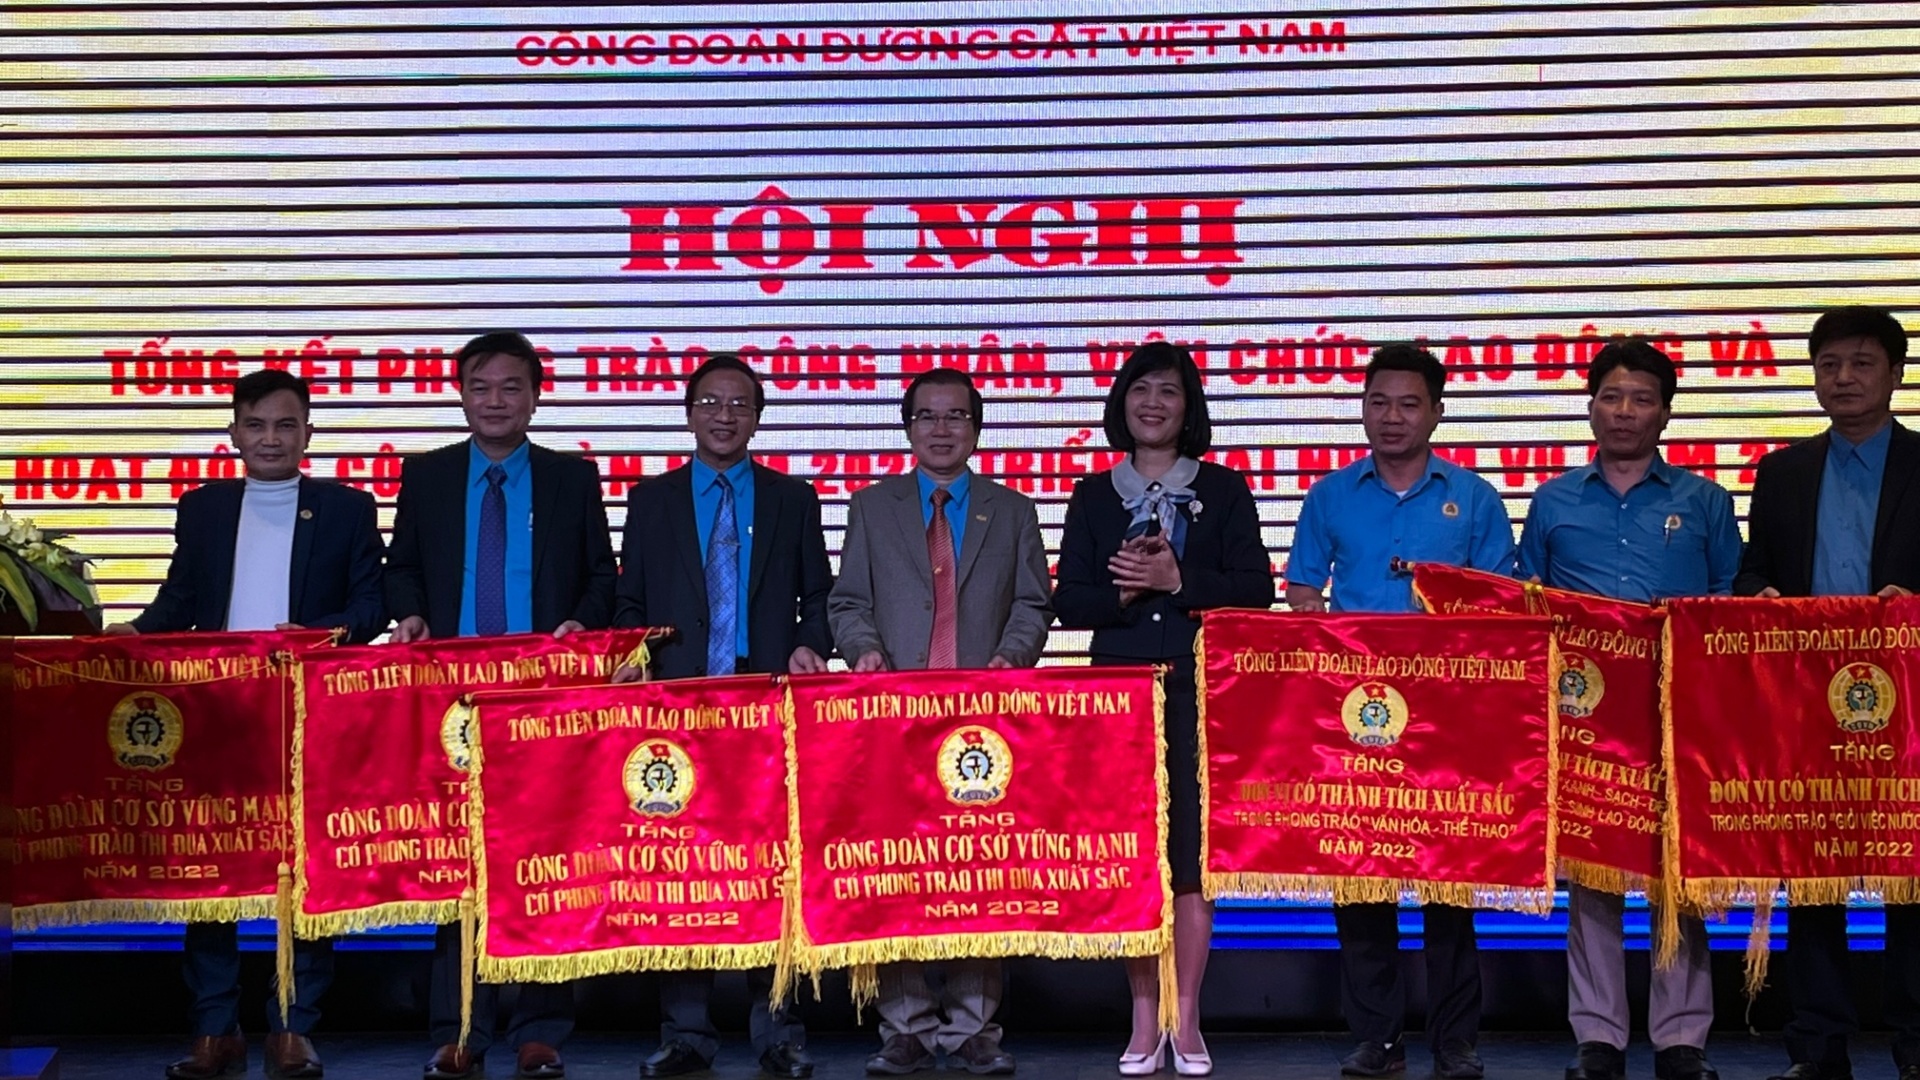 Công đoàn Đường sắt Việt Nam đã có những đóng góp nổi bật năm 2022